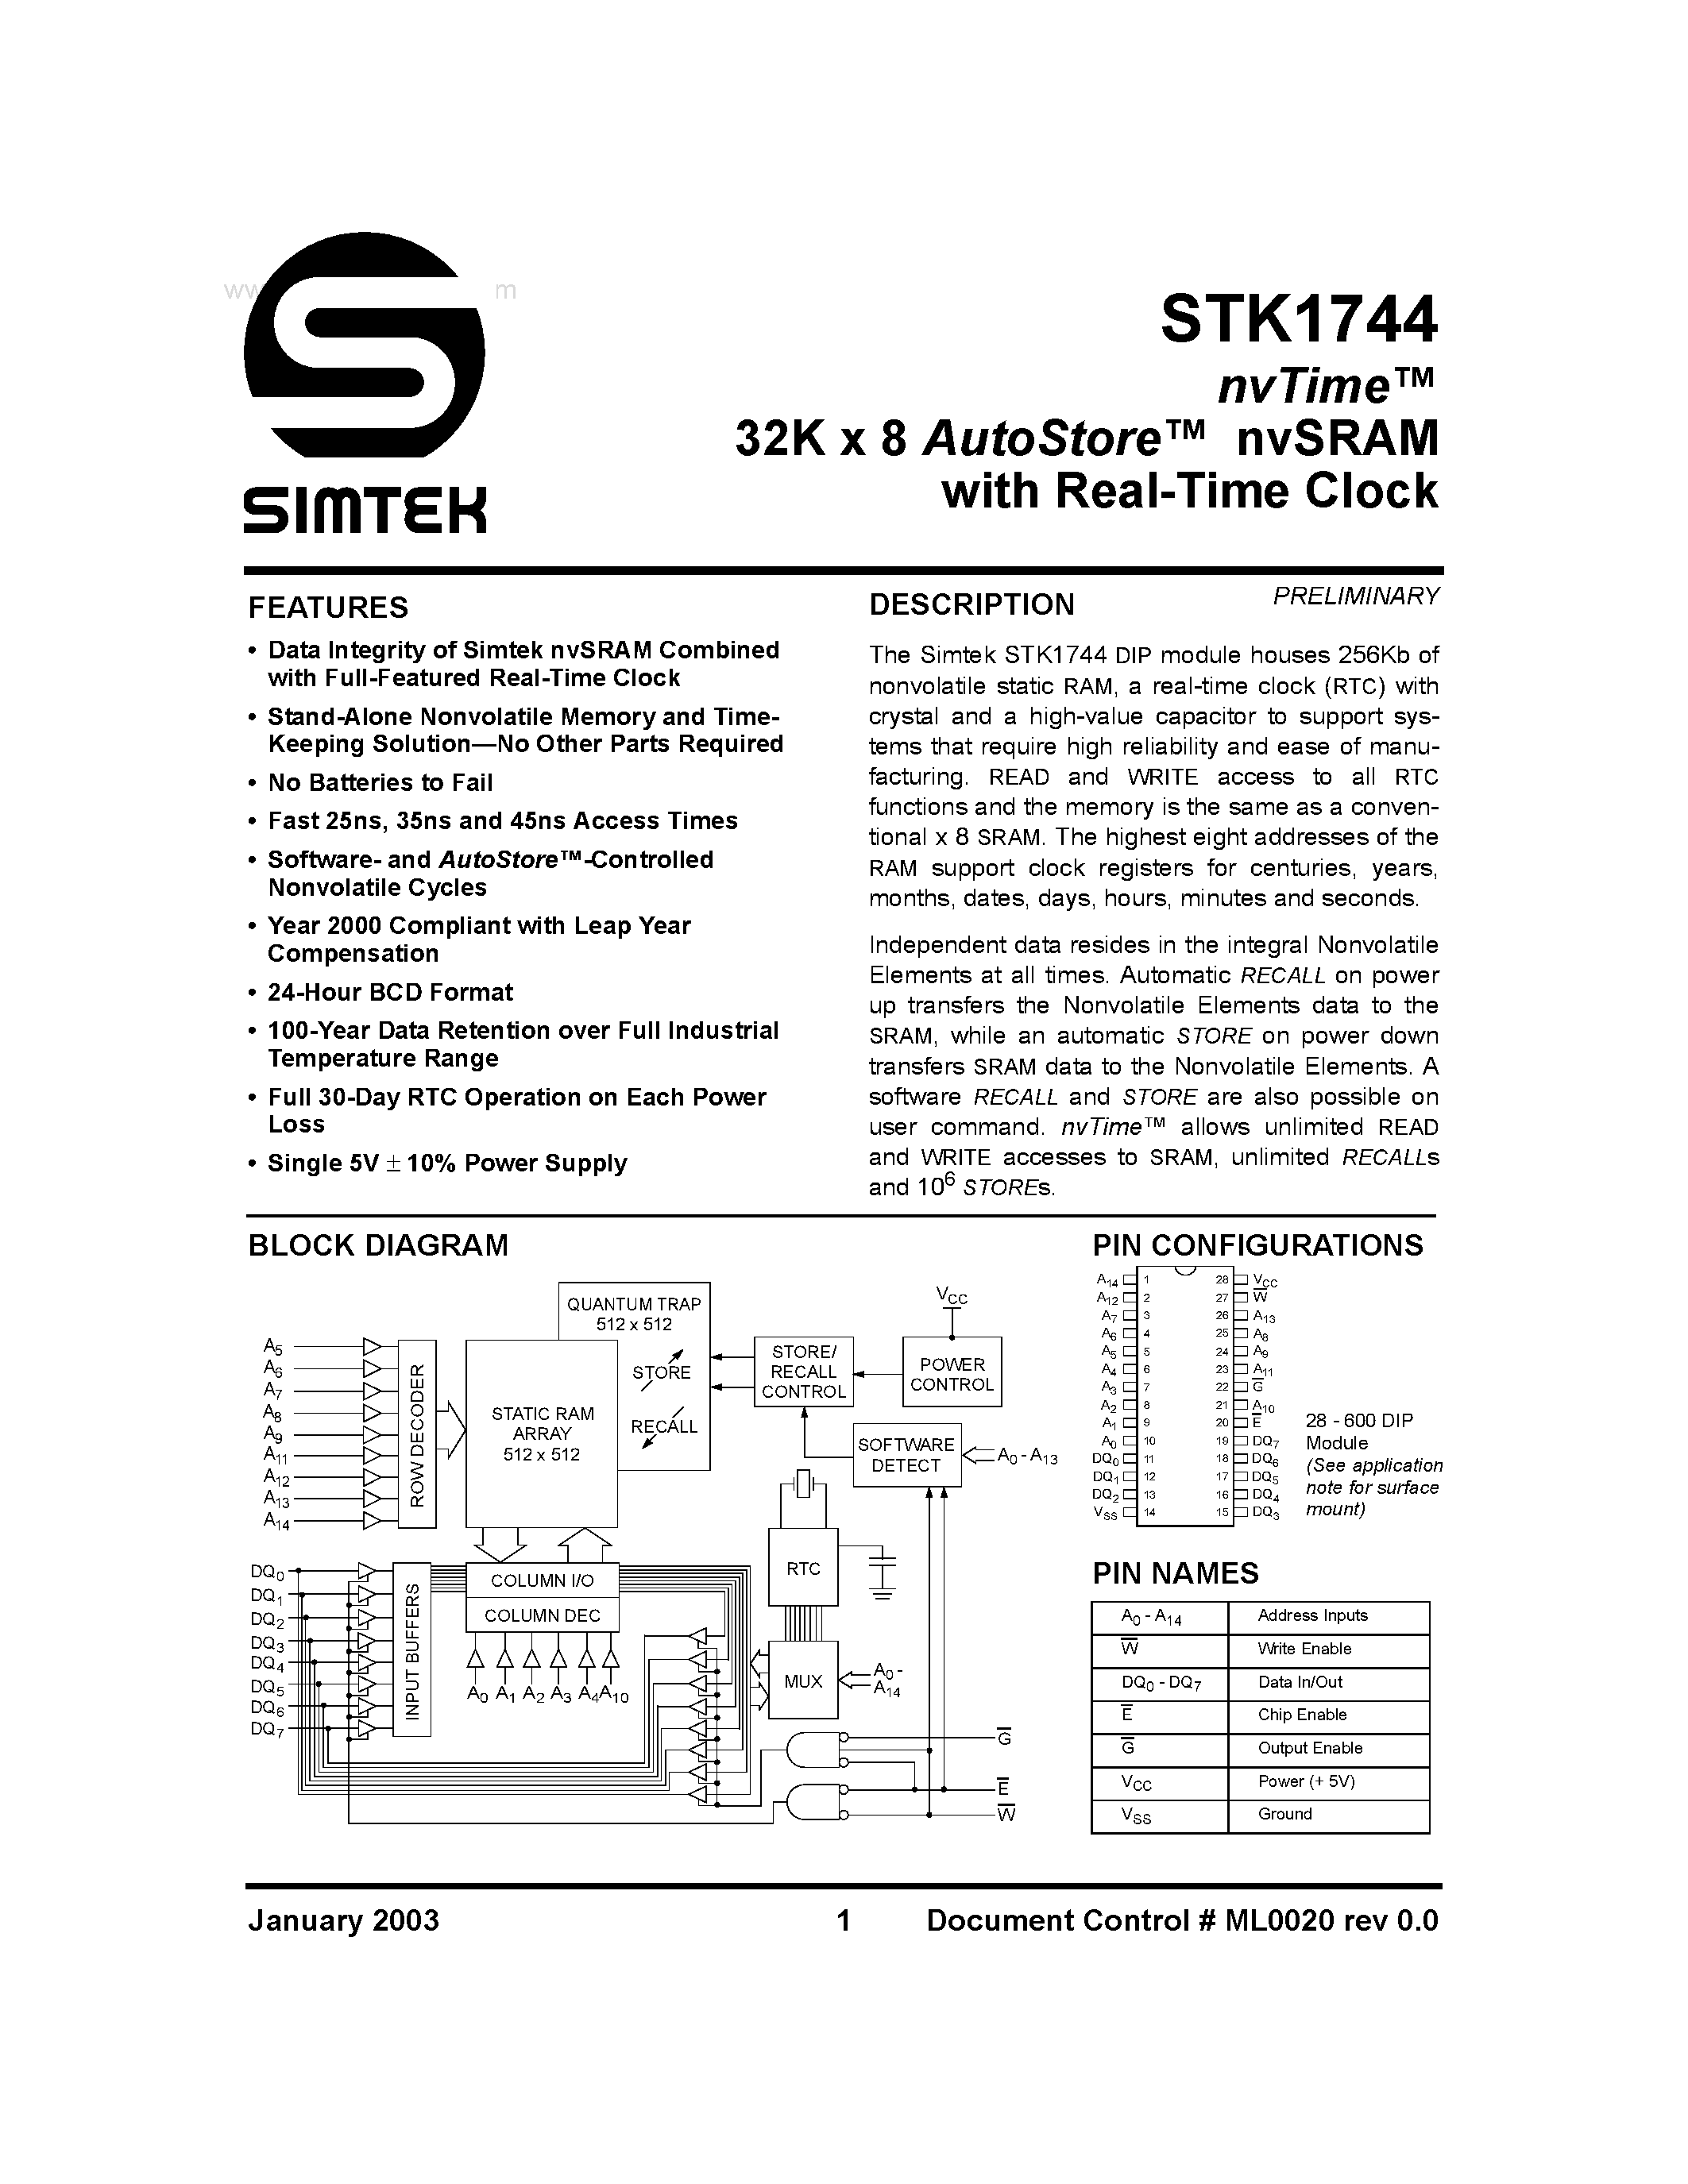 Даташит STK1744 - 32K x 8 AutoStore nvSRAM страница 1